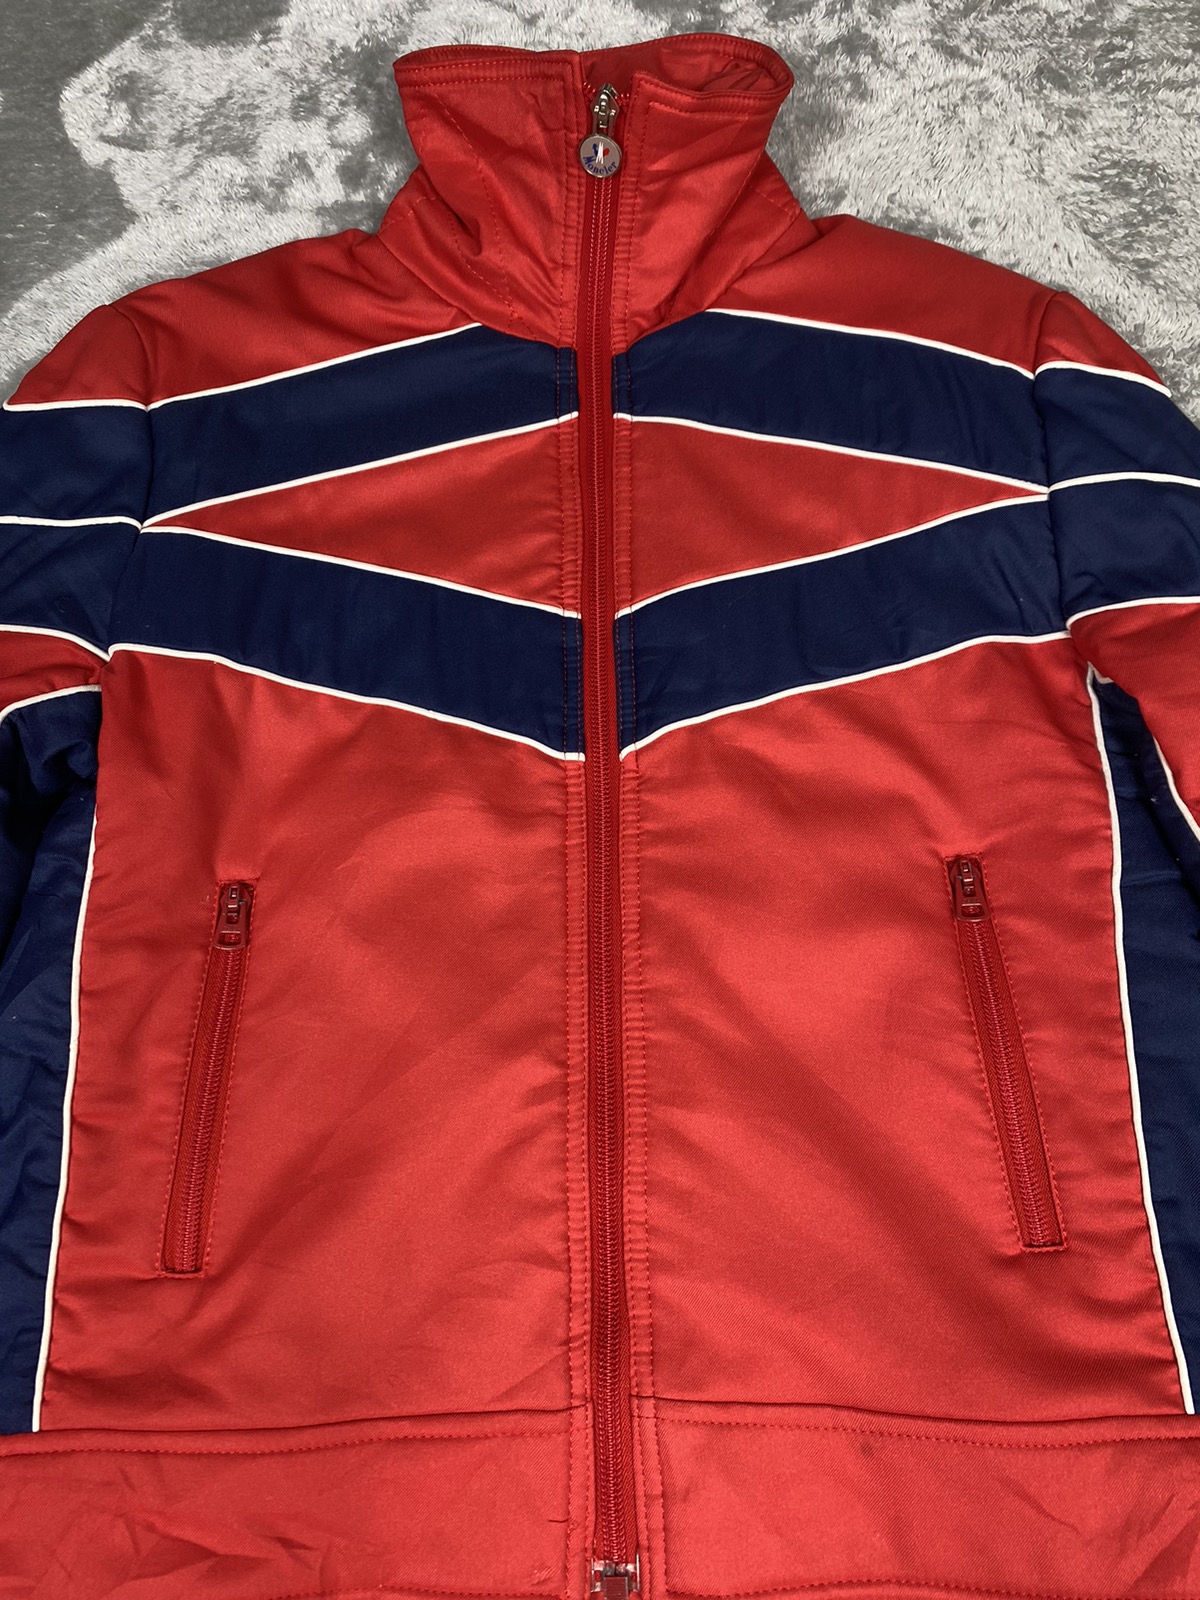 Vintage Moncler Jacket. J011 - 3